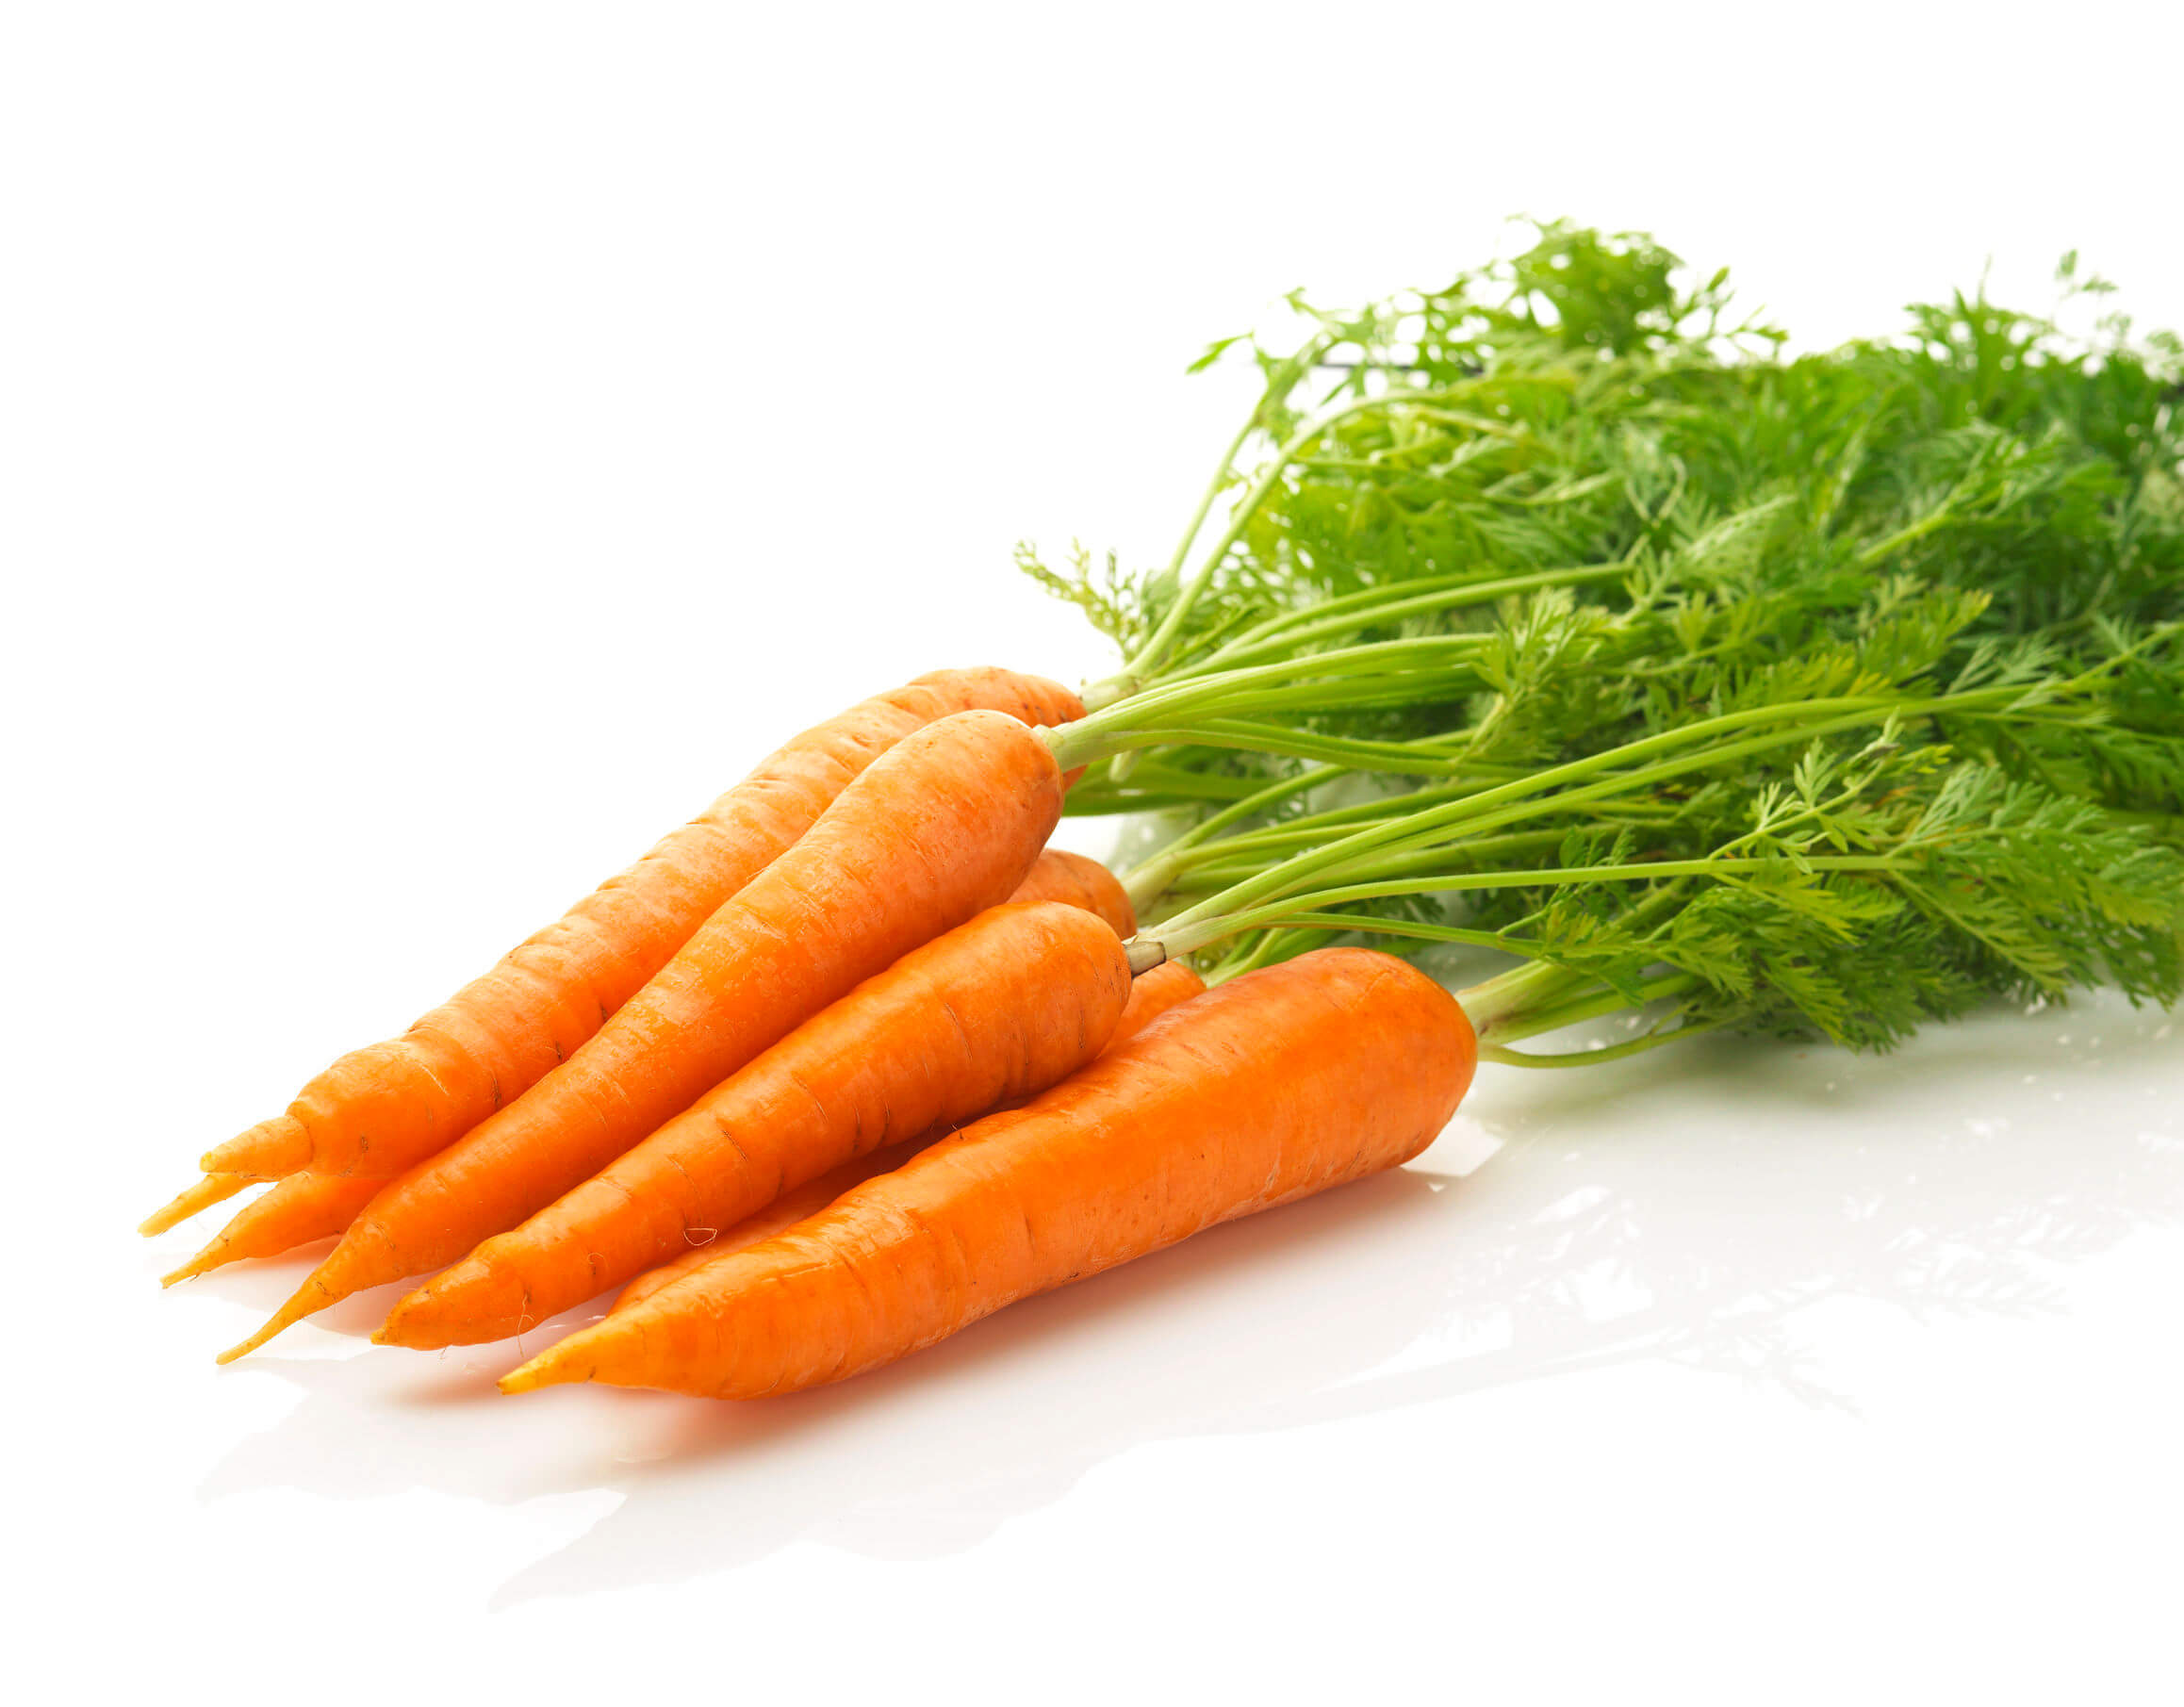 Las zanahorias son una excelente fuente de betacarotenos